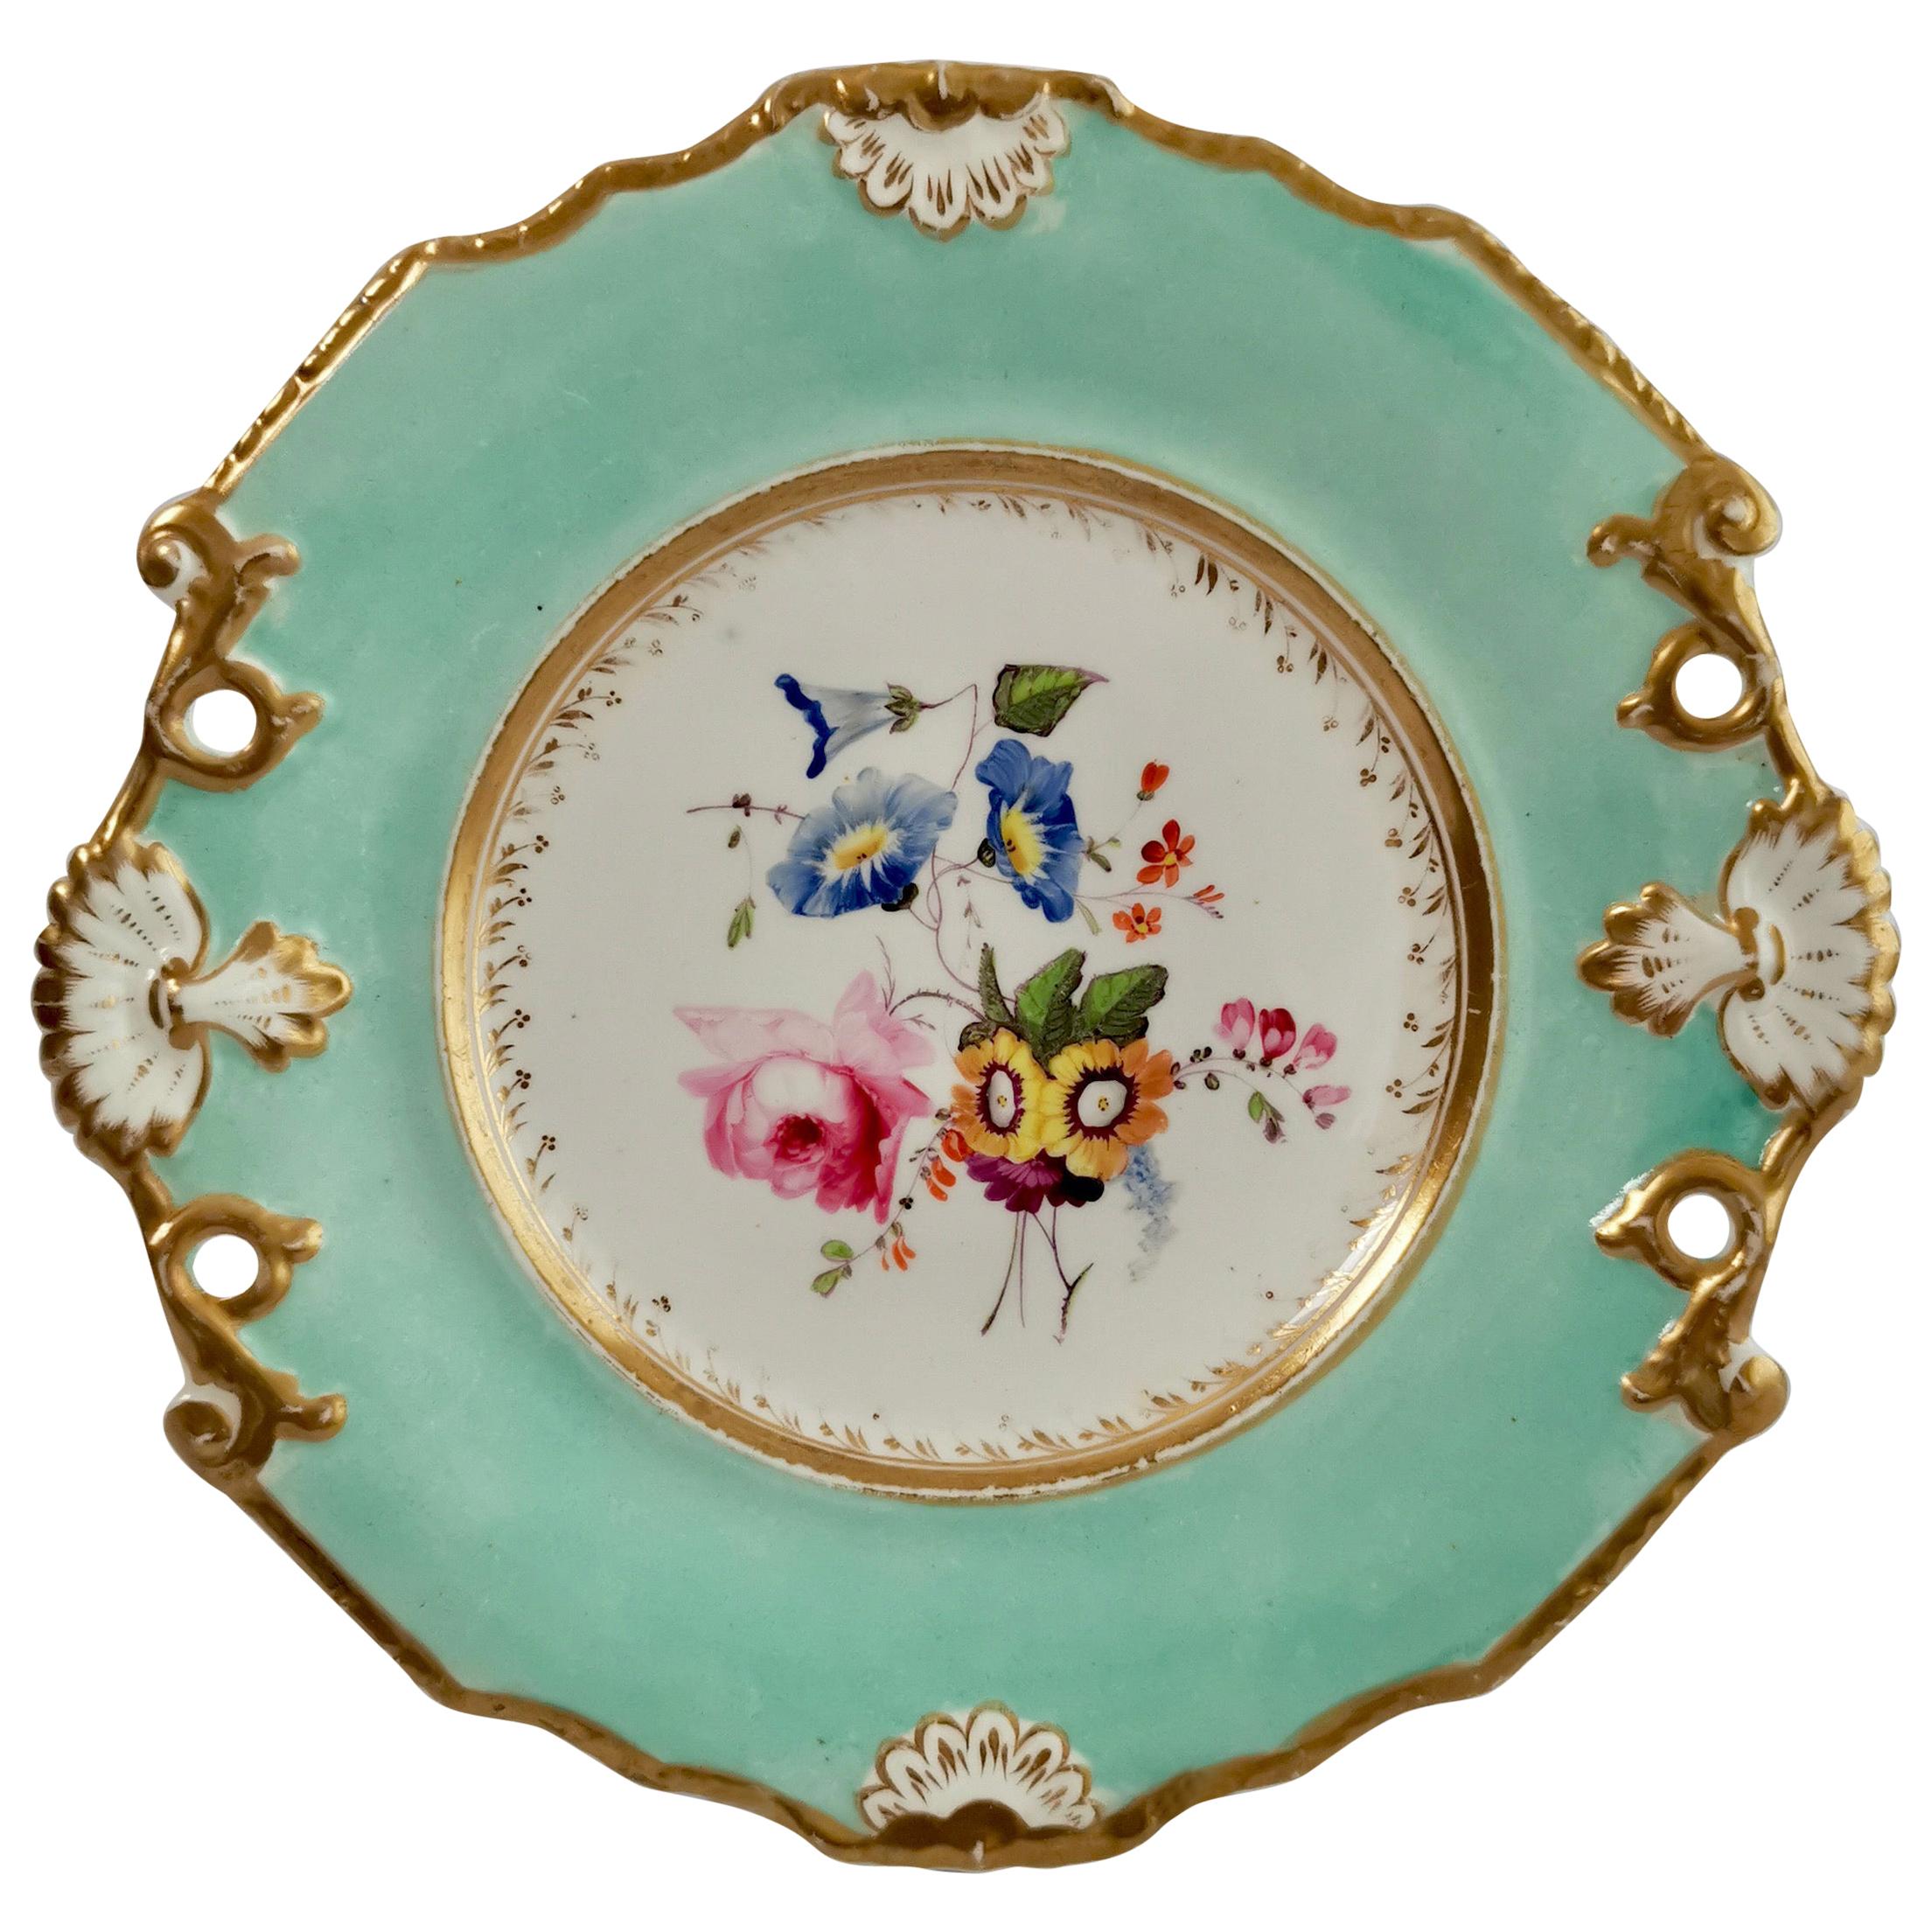 Samuel Alcock Porcelain Plate, Flowers on Duck Egg Blue, Regency, circa 1820